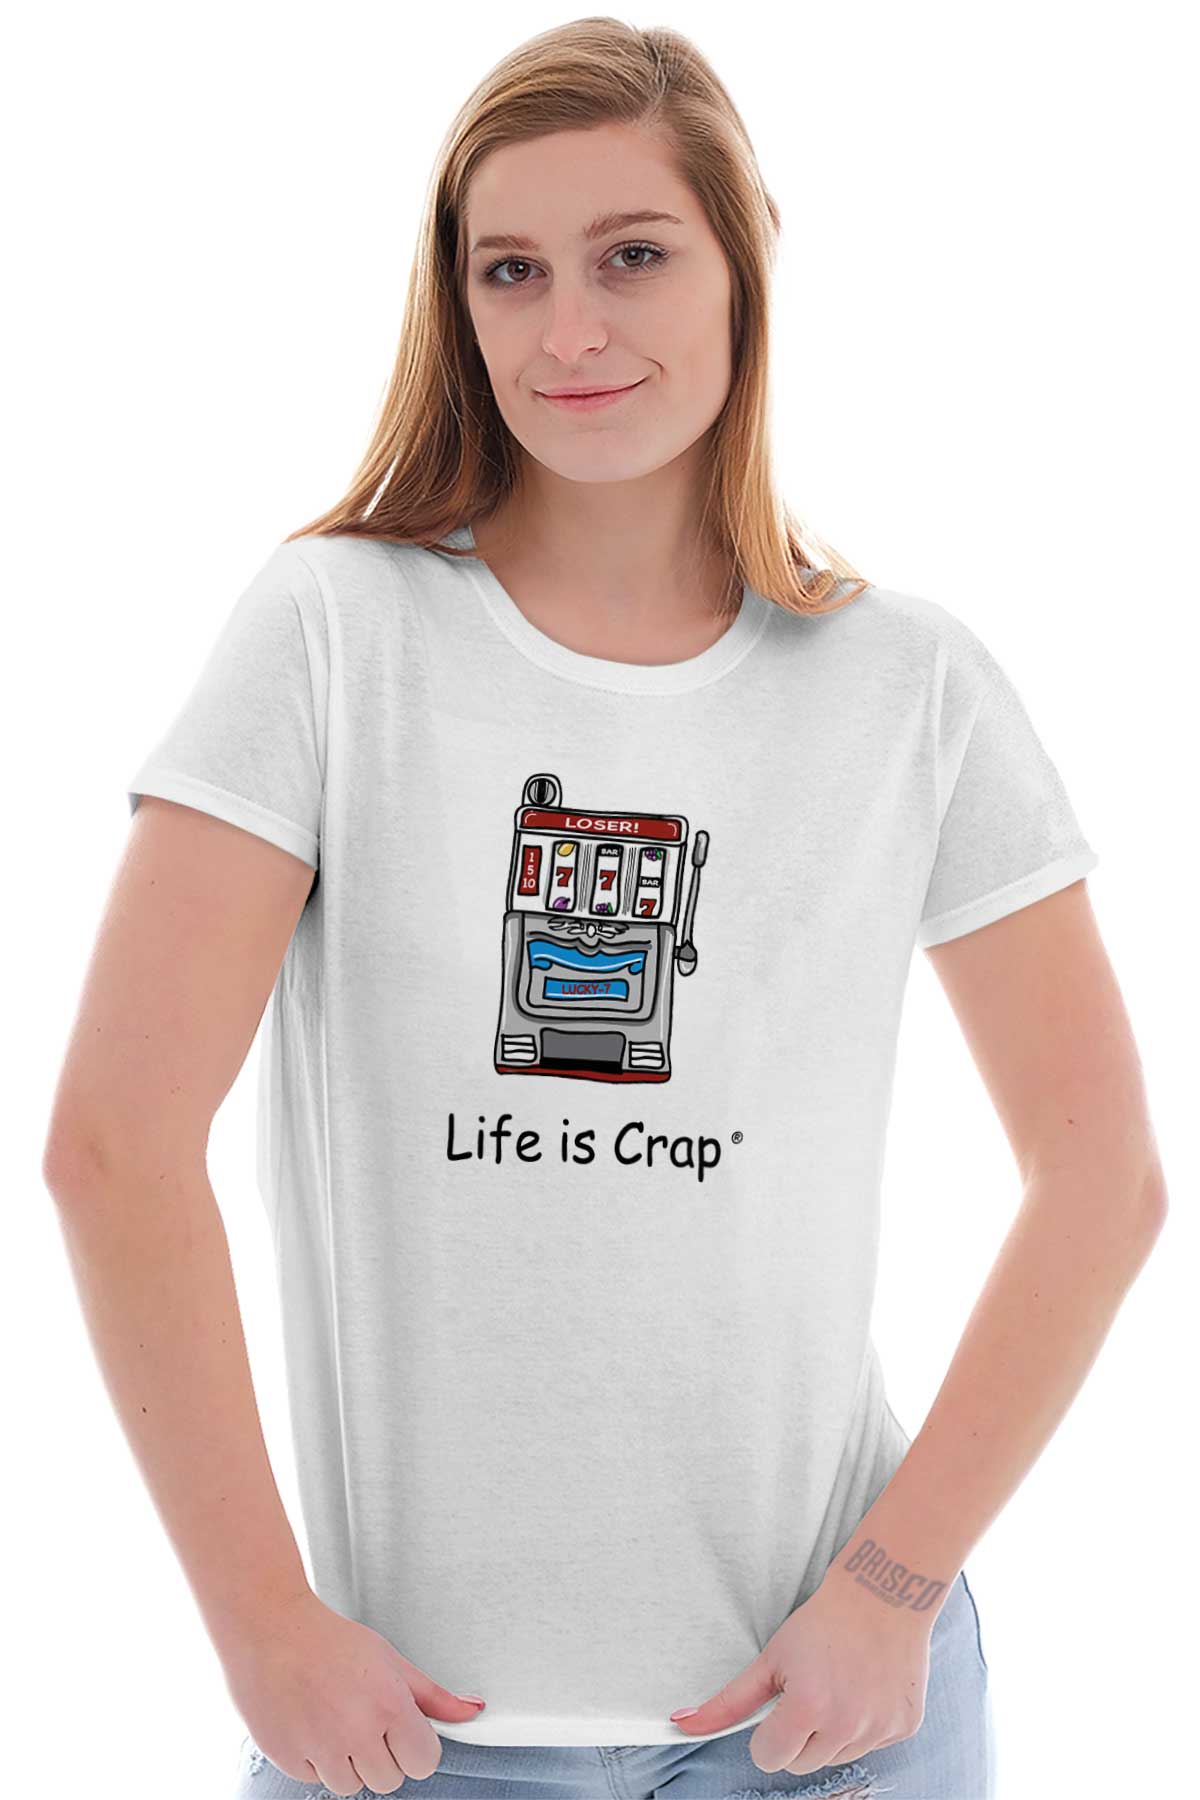 Slot Master T-shirt Women's Gambling Tee Las Vegas Shirt Gambler Tshirt  Poker Gift Casino Shirts 